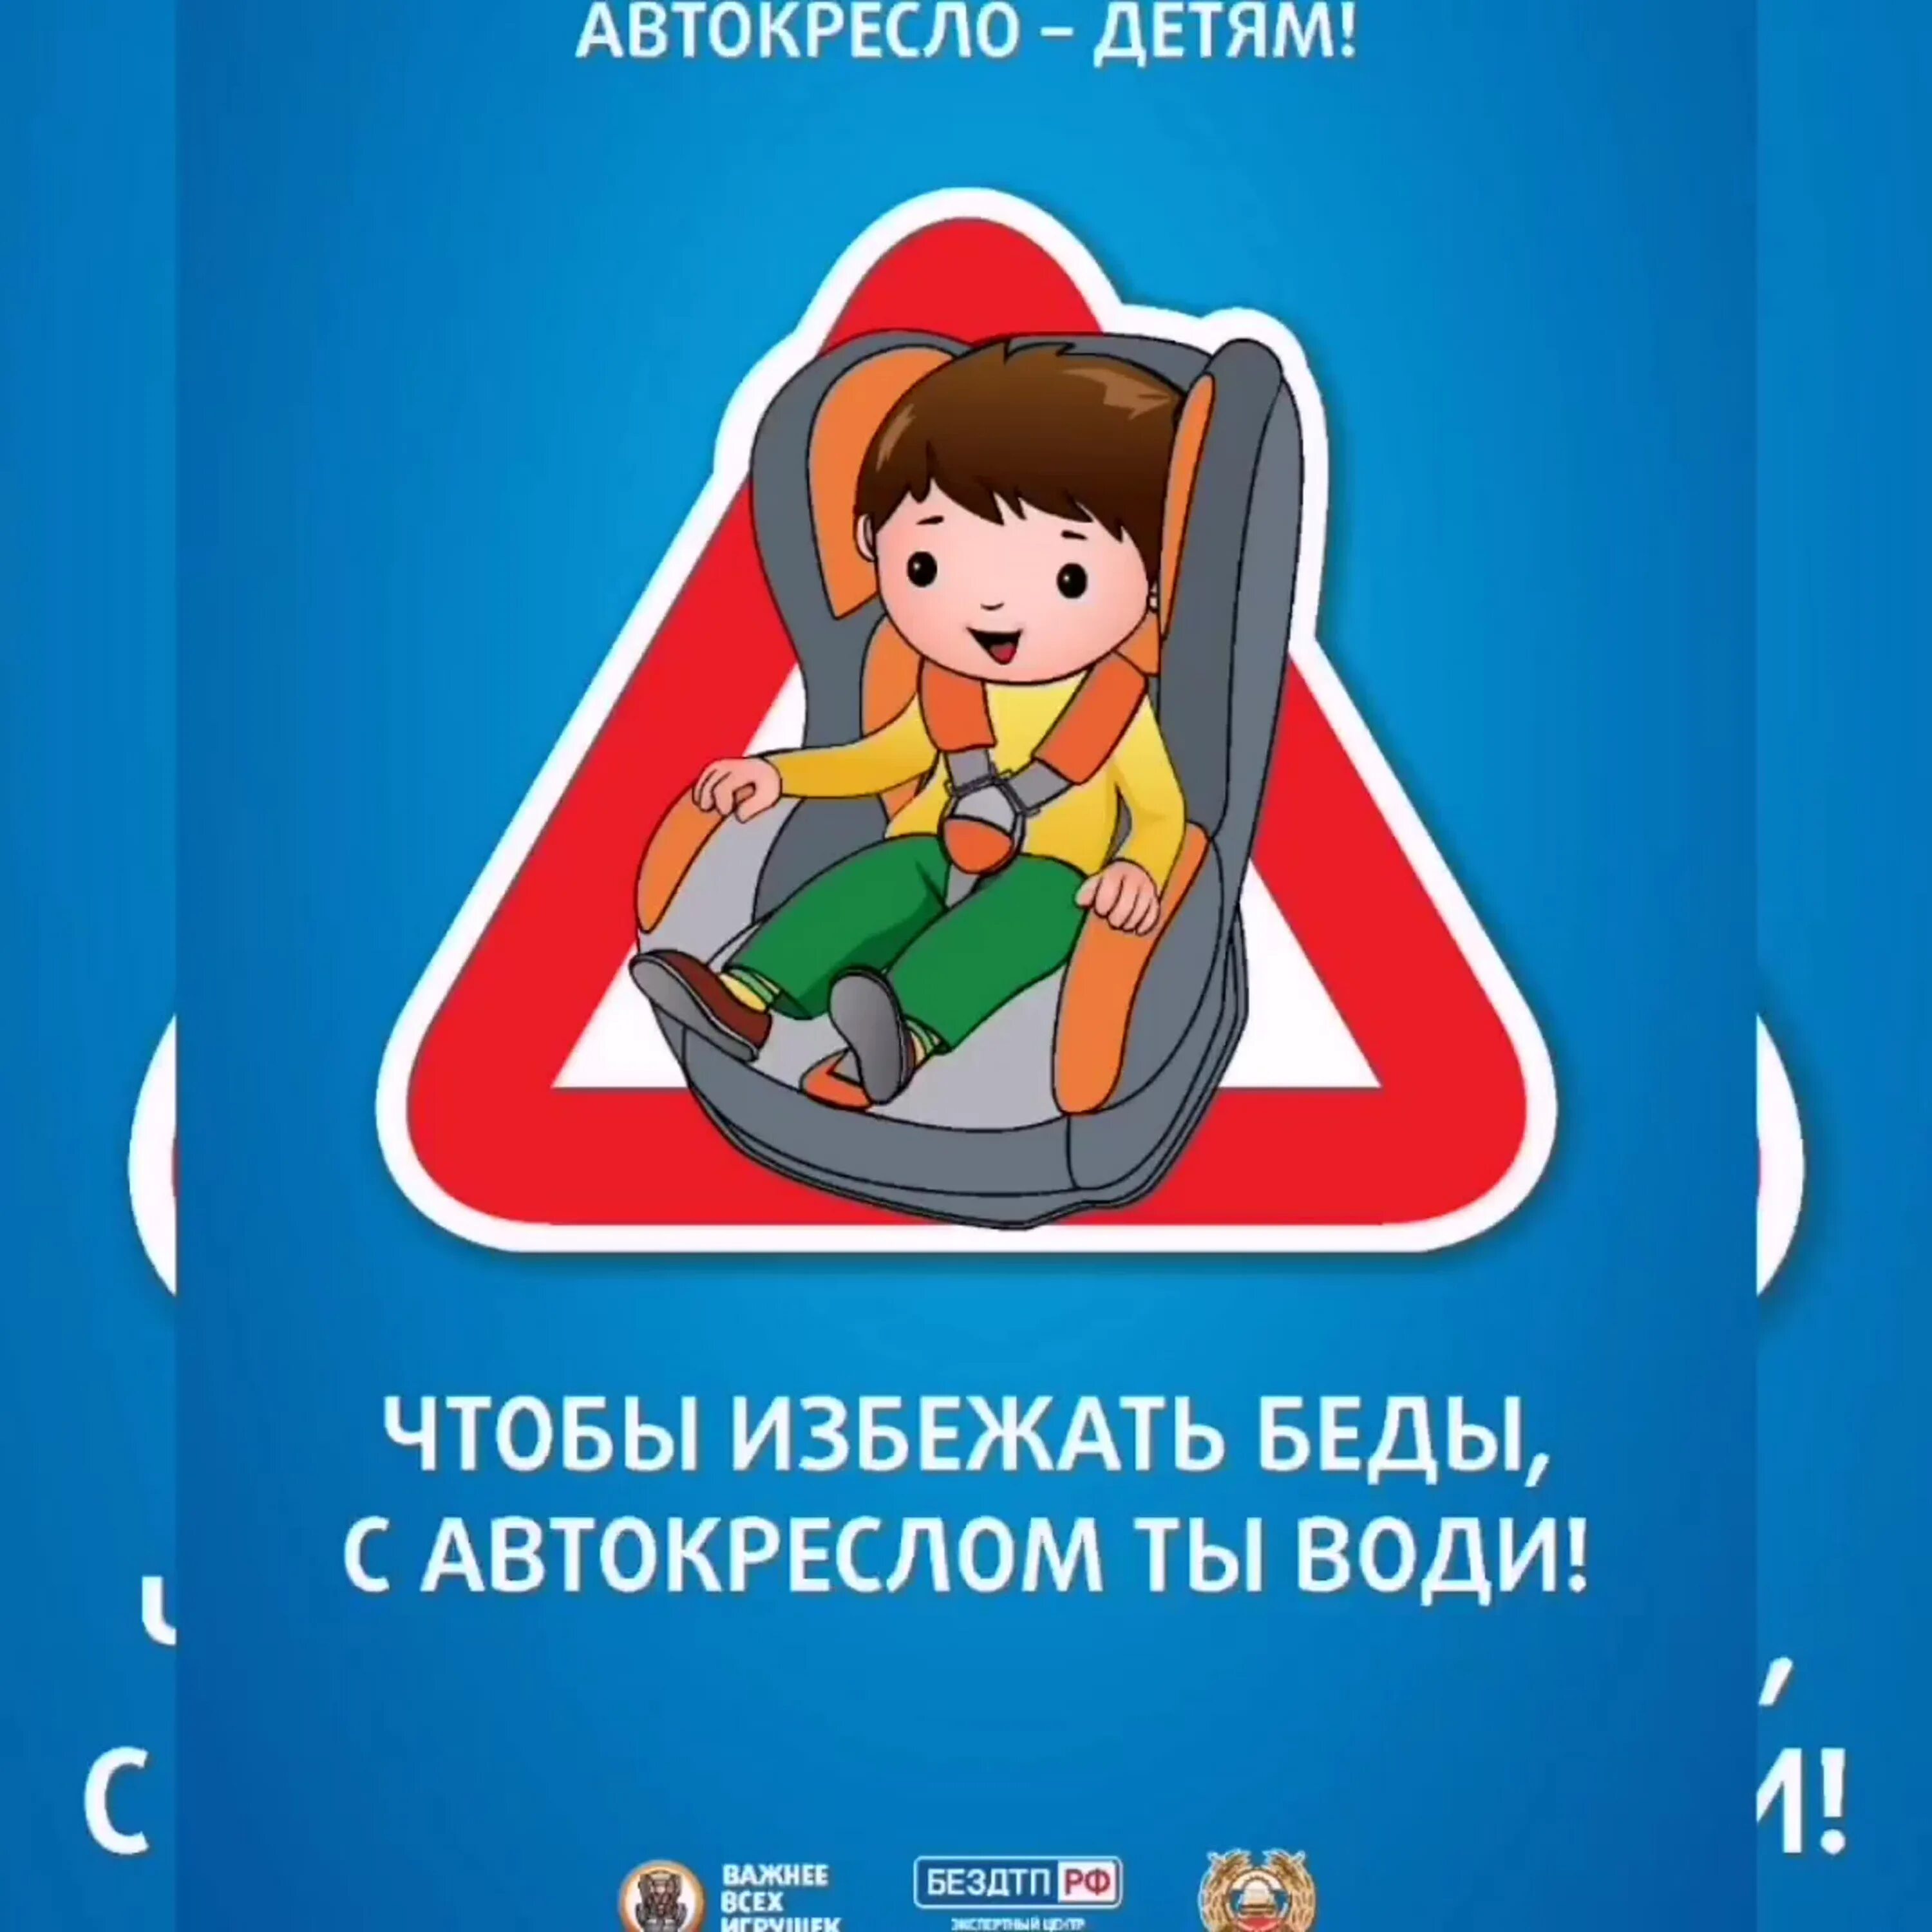 Автокресло для детей. Акция автокресло детям в детском саду. Плакат про автокресла для детей. Плакат автокресло детям. Пдд 2023 перевозки детей